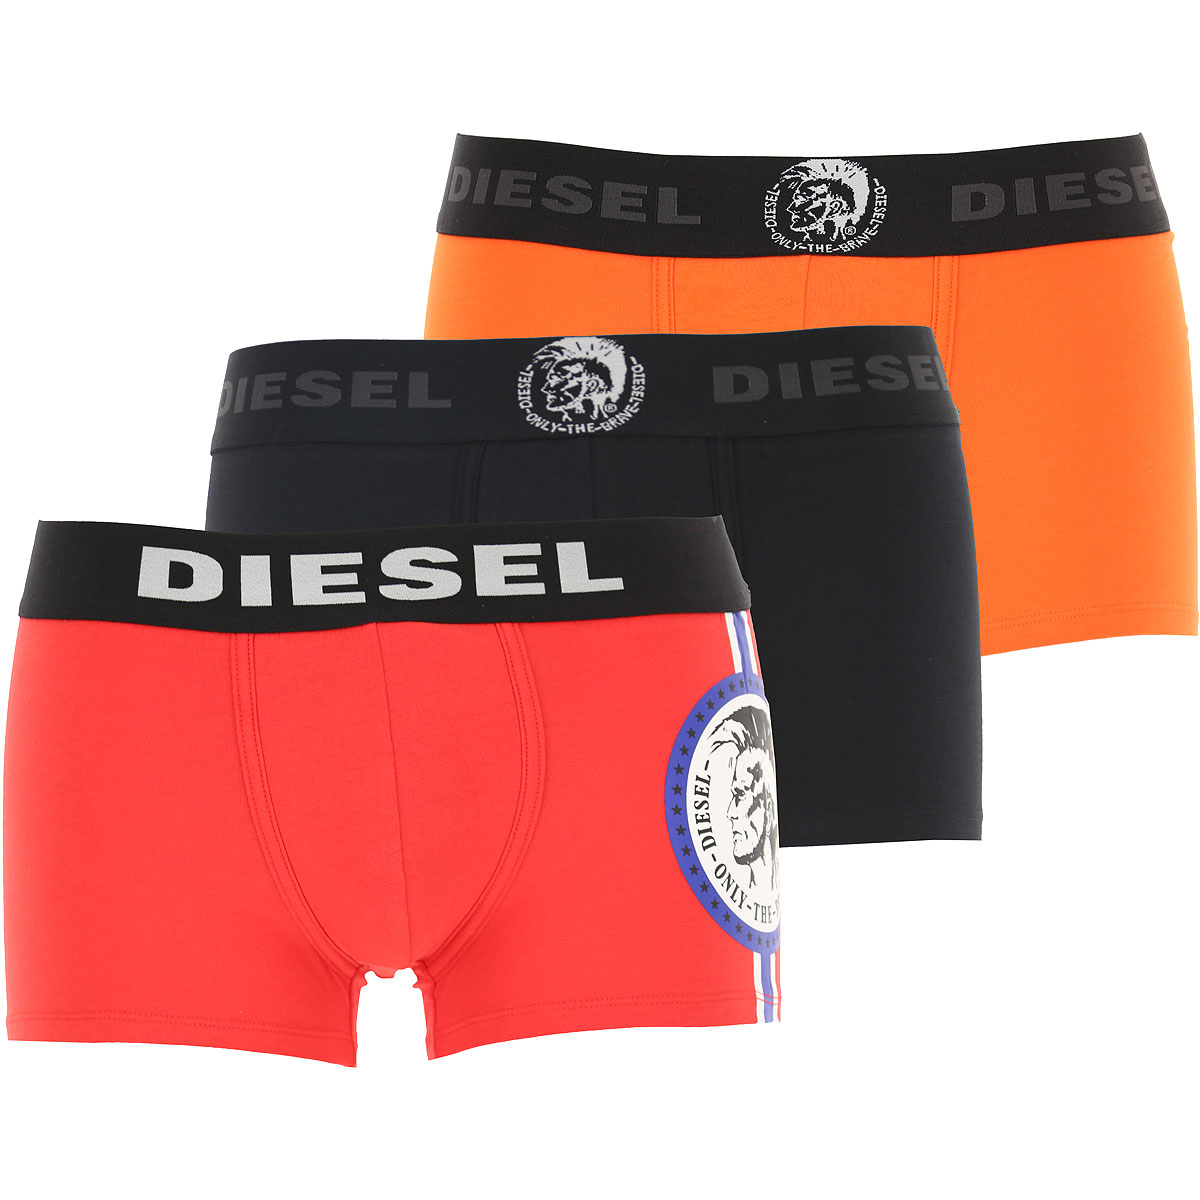 Diesel Boxer Shorts für Herren, Unterhose, Short, Boxer Günstig im Sale, 3 Pack, Rot, Baumwolle, 2017, L M S XL